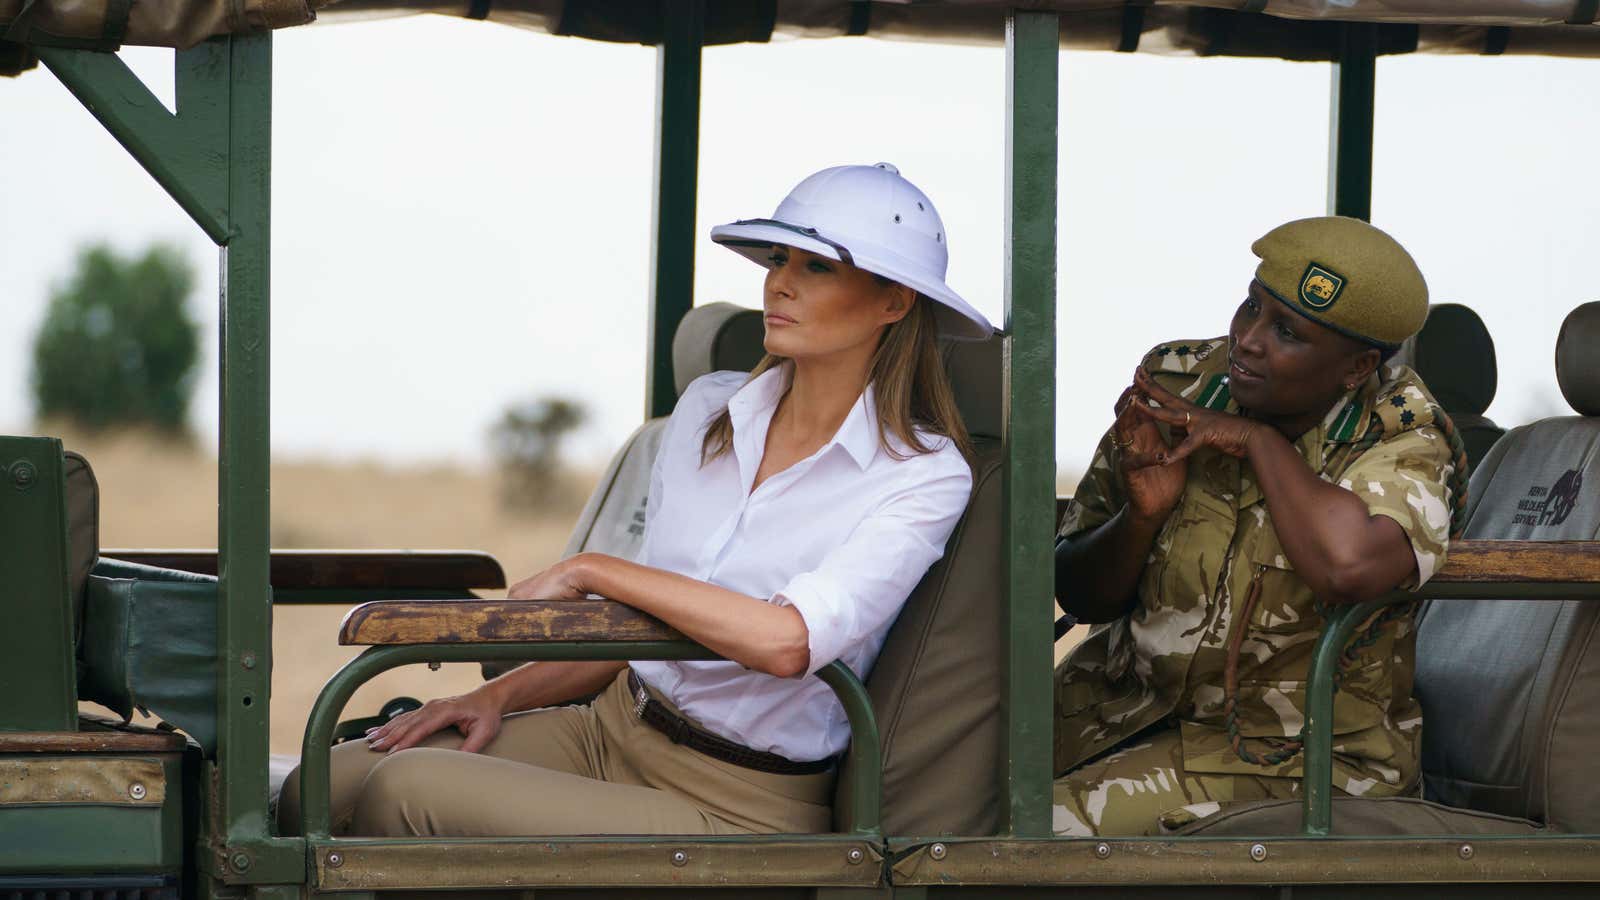 Safari by Melania Trump.